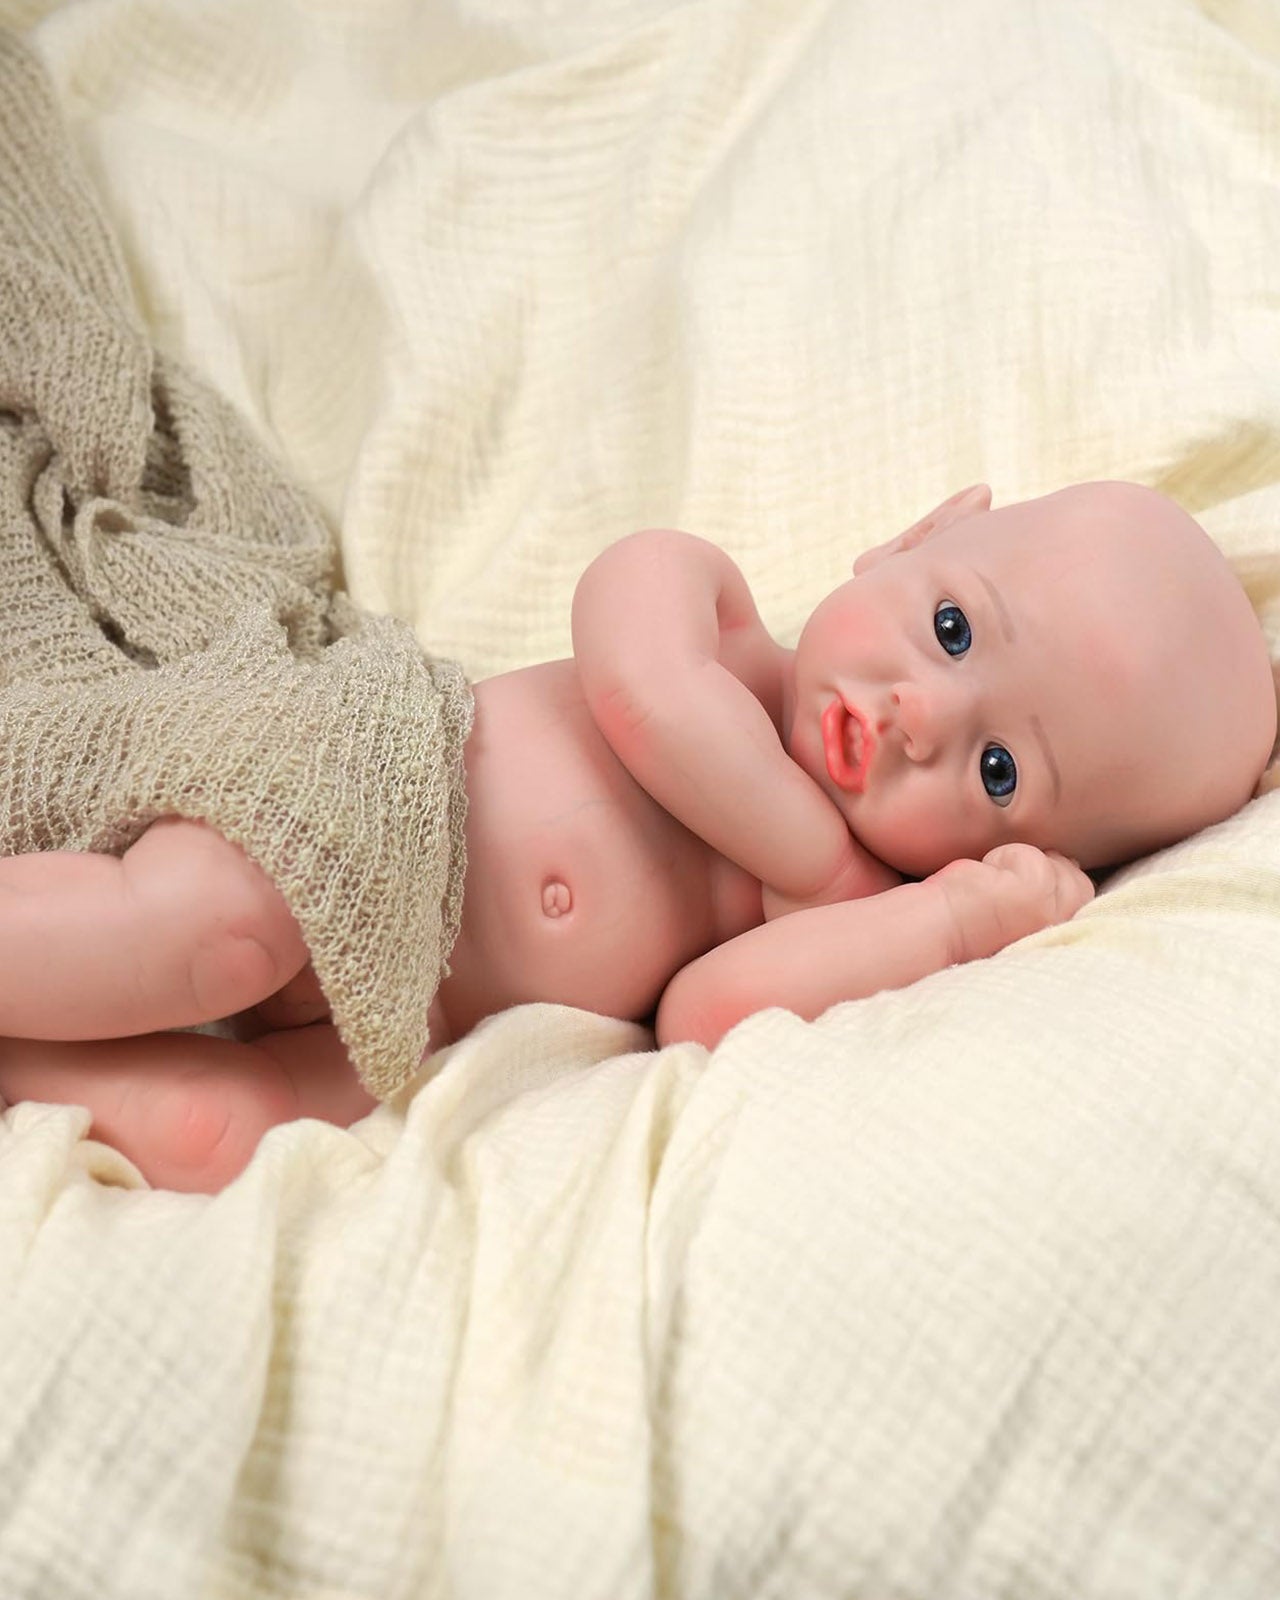 Trista - 16" Solid Platinum Silicone Reborn Baby Dolls Cute Realistic Newborn Girl With Big Blue Eyes